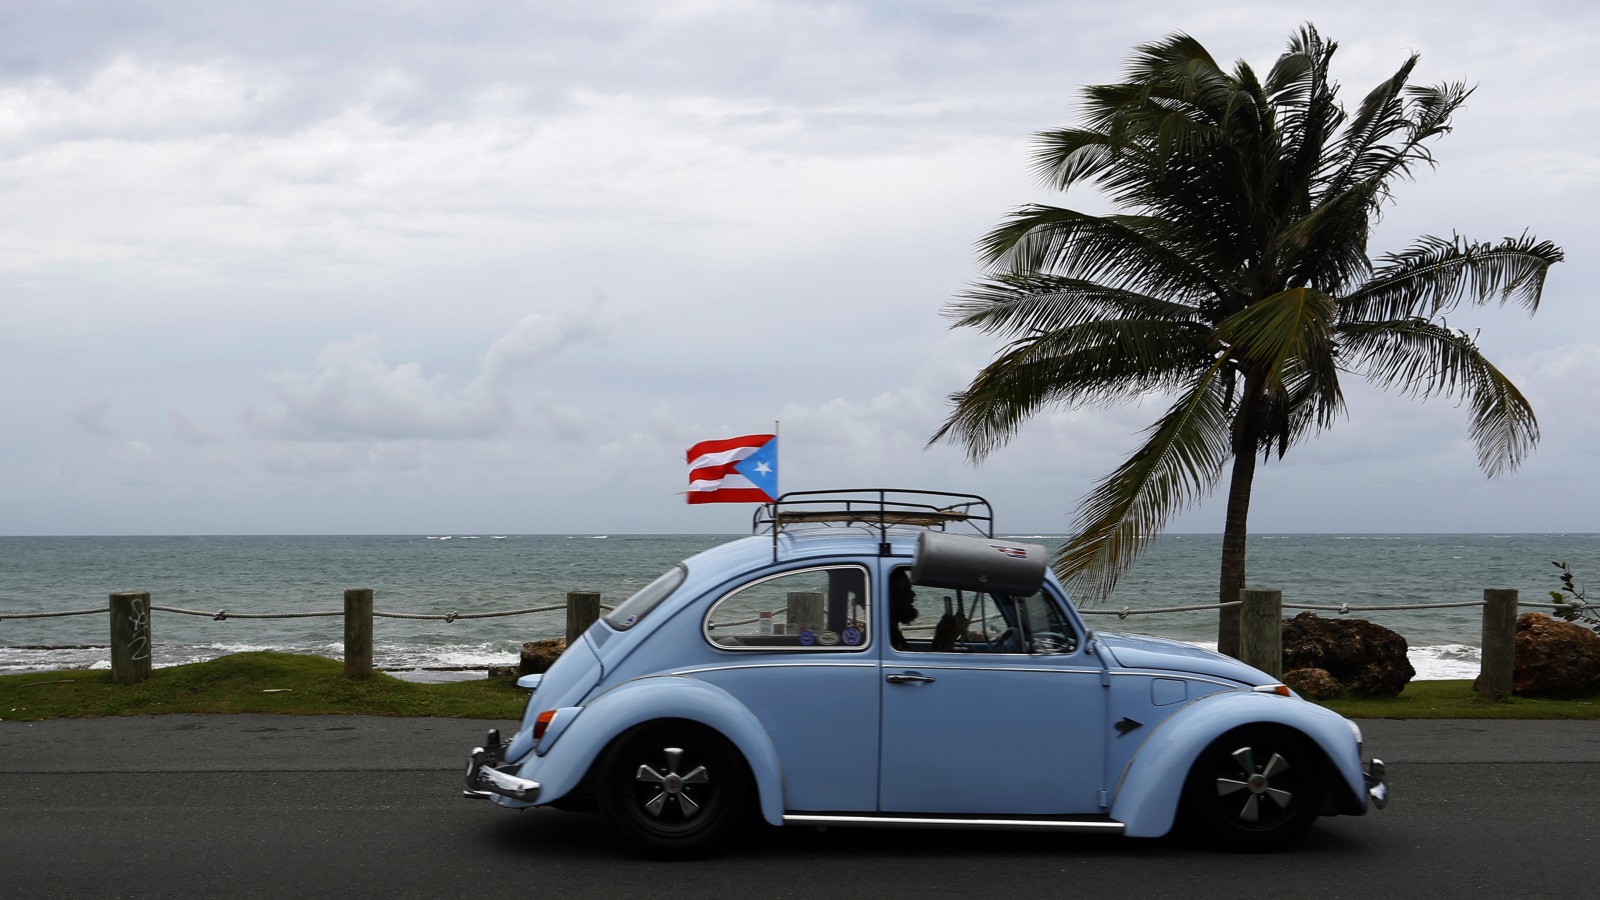 تبرز استراتيجية التسويق السياحي لبورتوريكو التي يستهلها الفيديو كليب نهاراً من أزقتها ودروبها المتفرعة وتصوير أناسها على أنهم أهل مرح وانفتاح